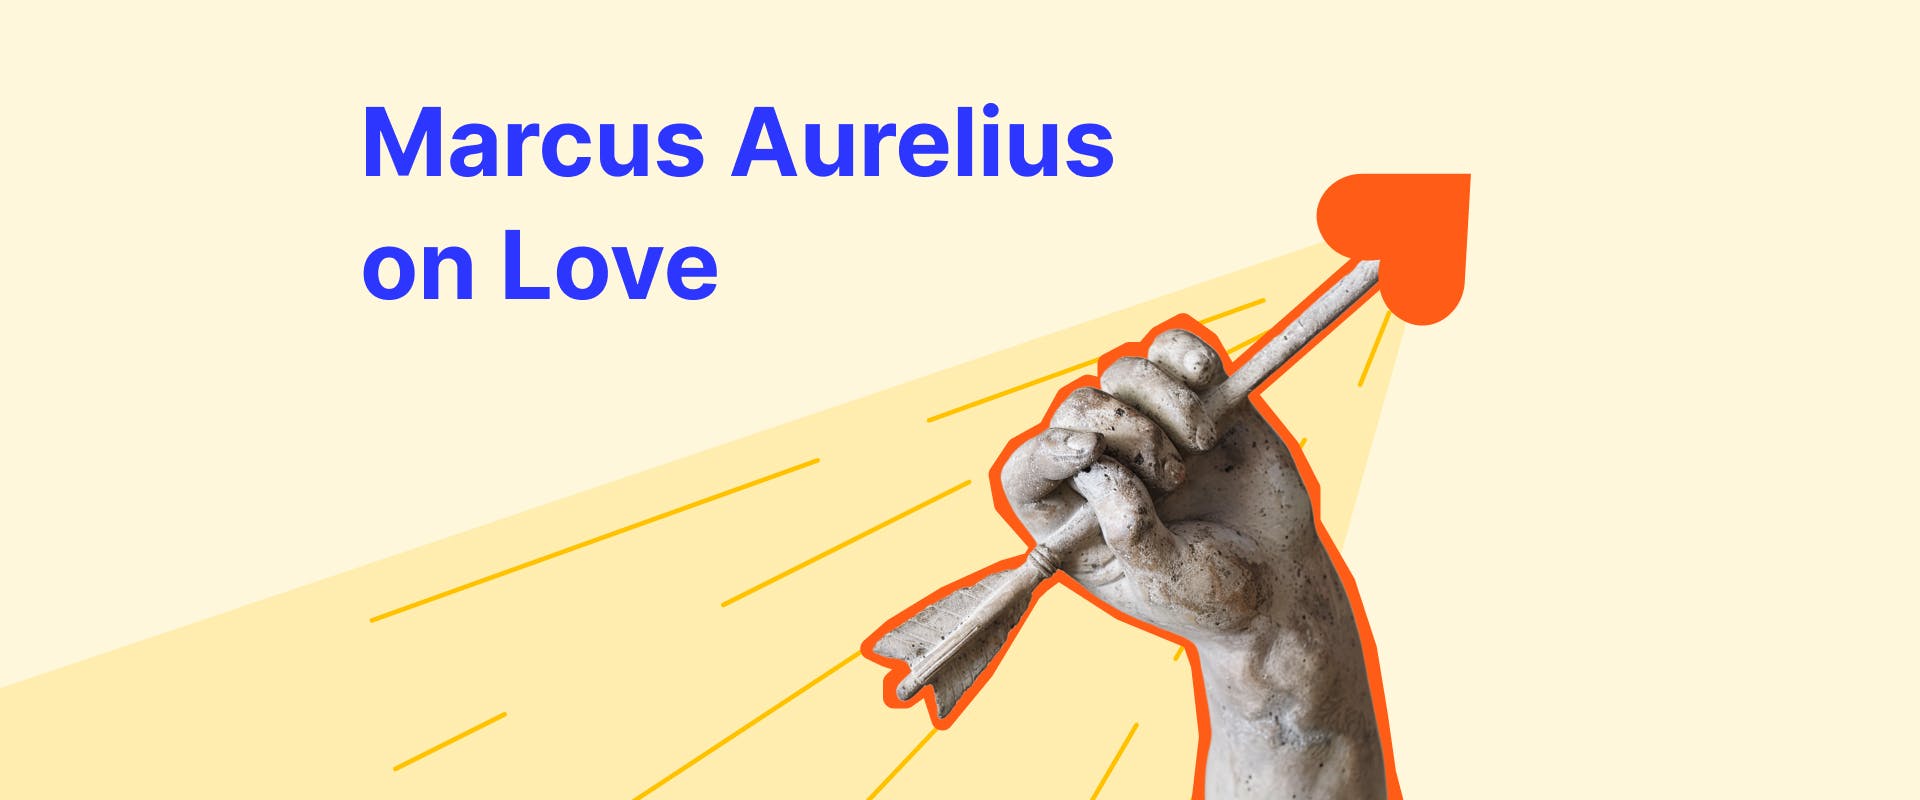 Marcus Aurelius leadership quotes